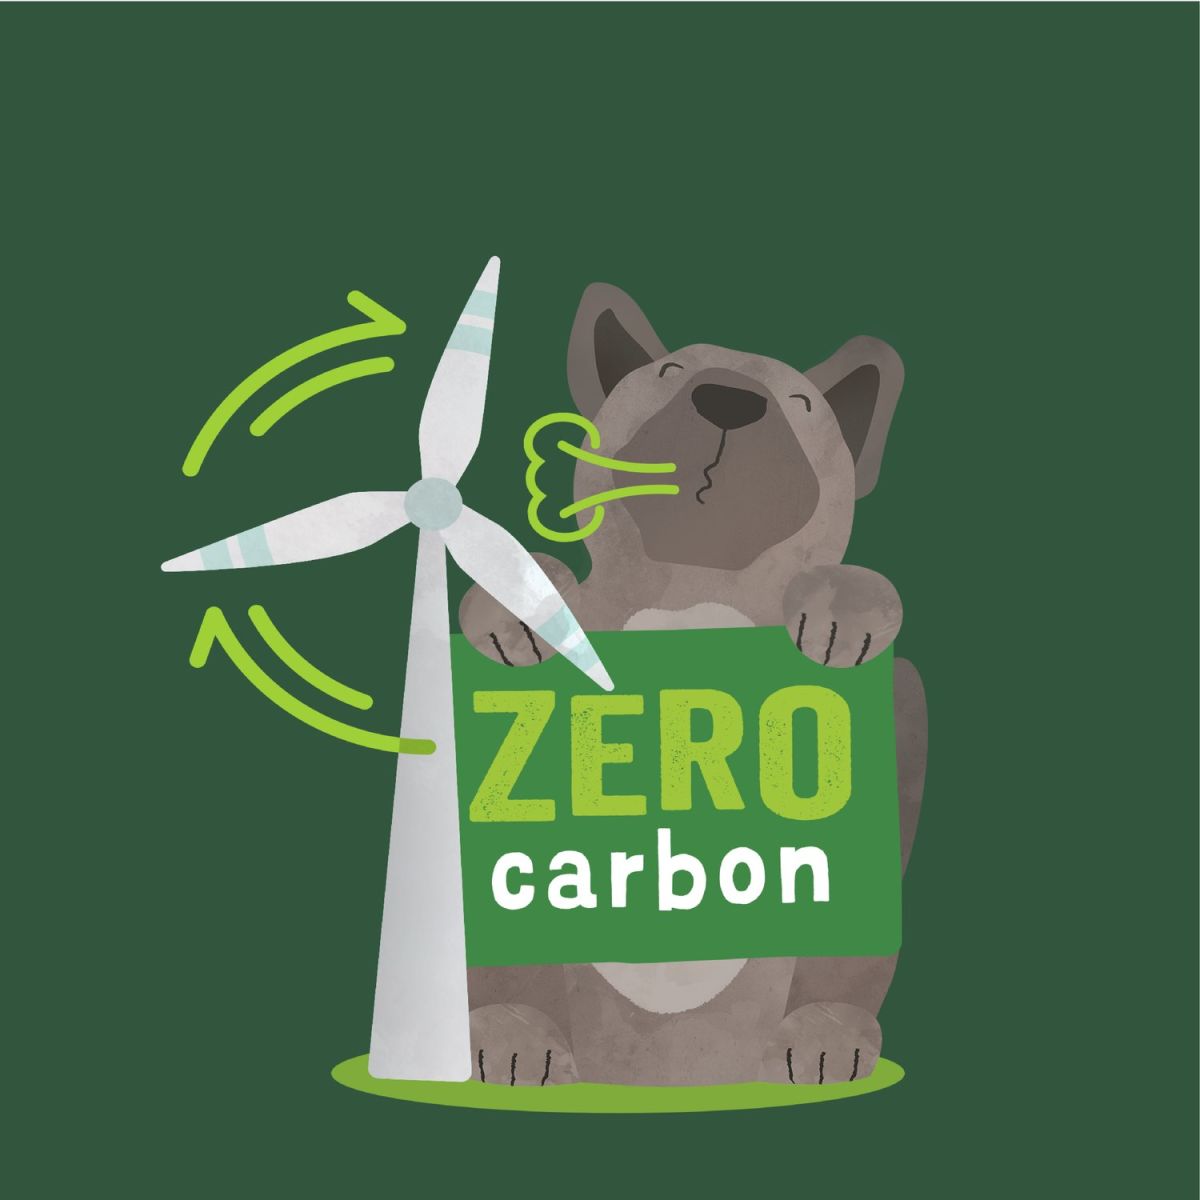 Zero Pawprint Plan: Zero Carbon